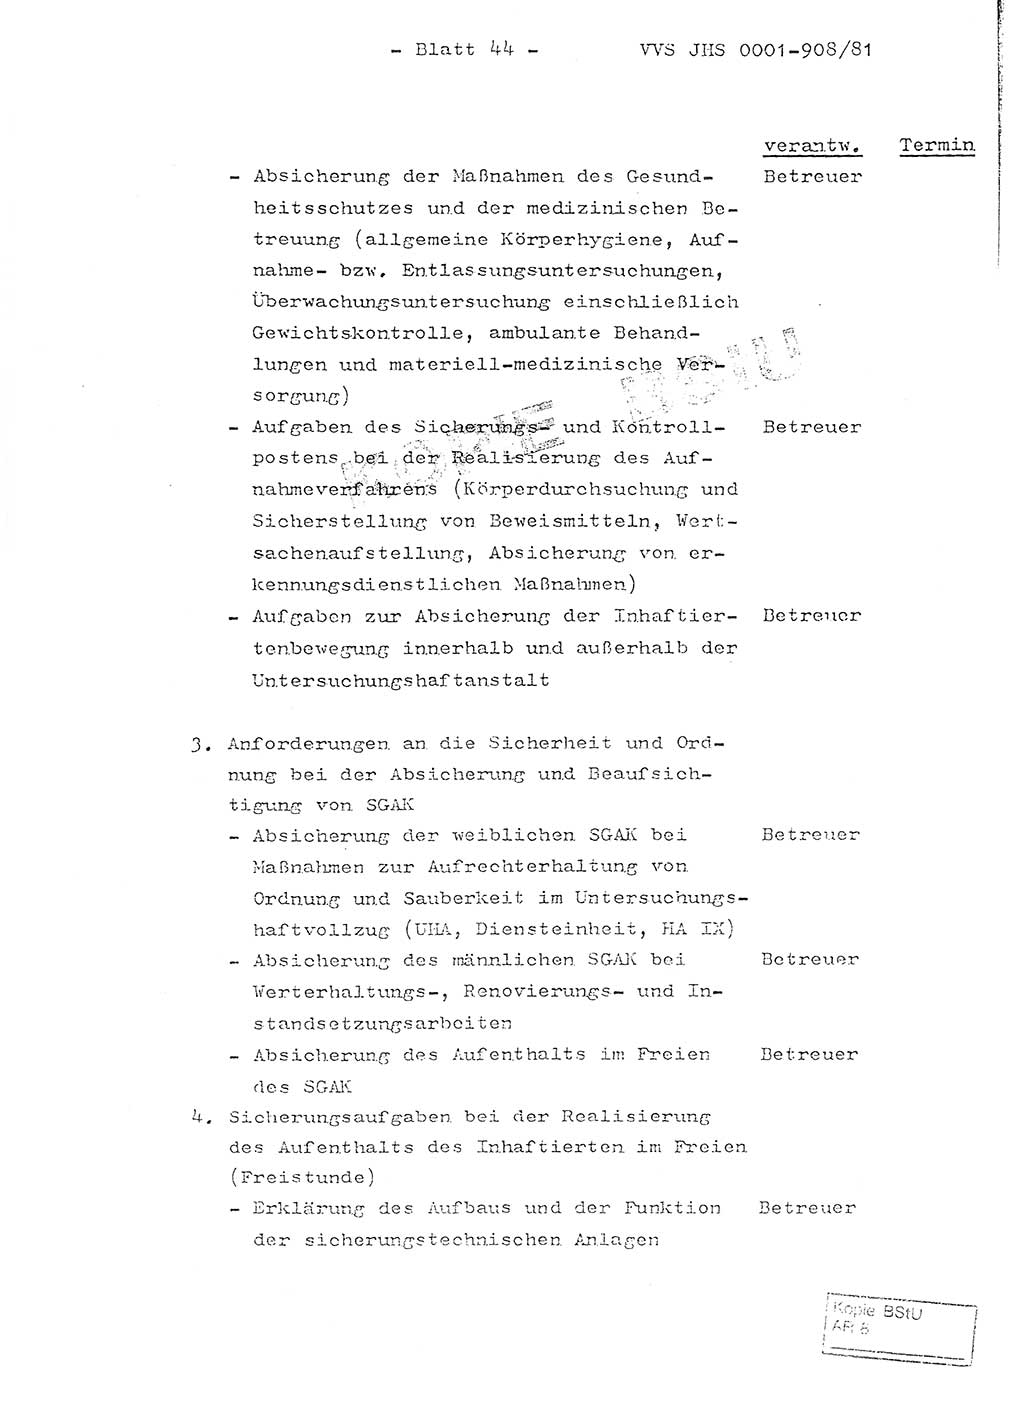 Fachschulabschlußarbeit Oberleutnant Wolfgang Wittmann (Abt. ⅩⅣ), Ministerium für Staatssicherheit (MfS) [Deutsche Demokratische Republik (DDR)], Juristische Hochschule (JHS), Vertrauliche Verschlußsache (VVS) o001-908/82, Potsdam 1982, Blatt 44 (FS-Abschl.-Arb. MfS DDR JHS VVS o001-908/82 1982, Bl. 44)